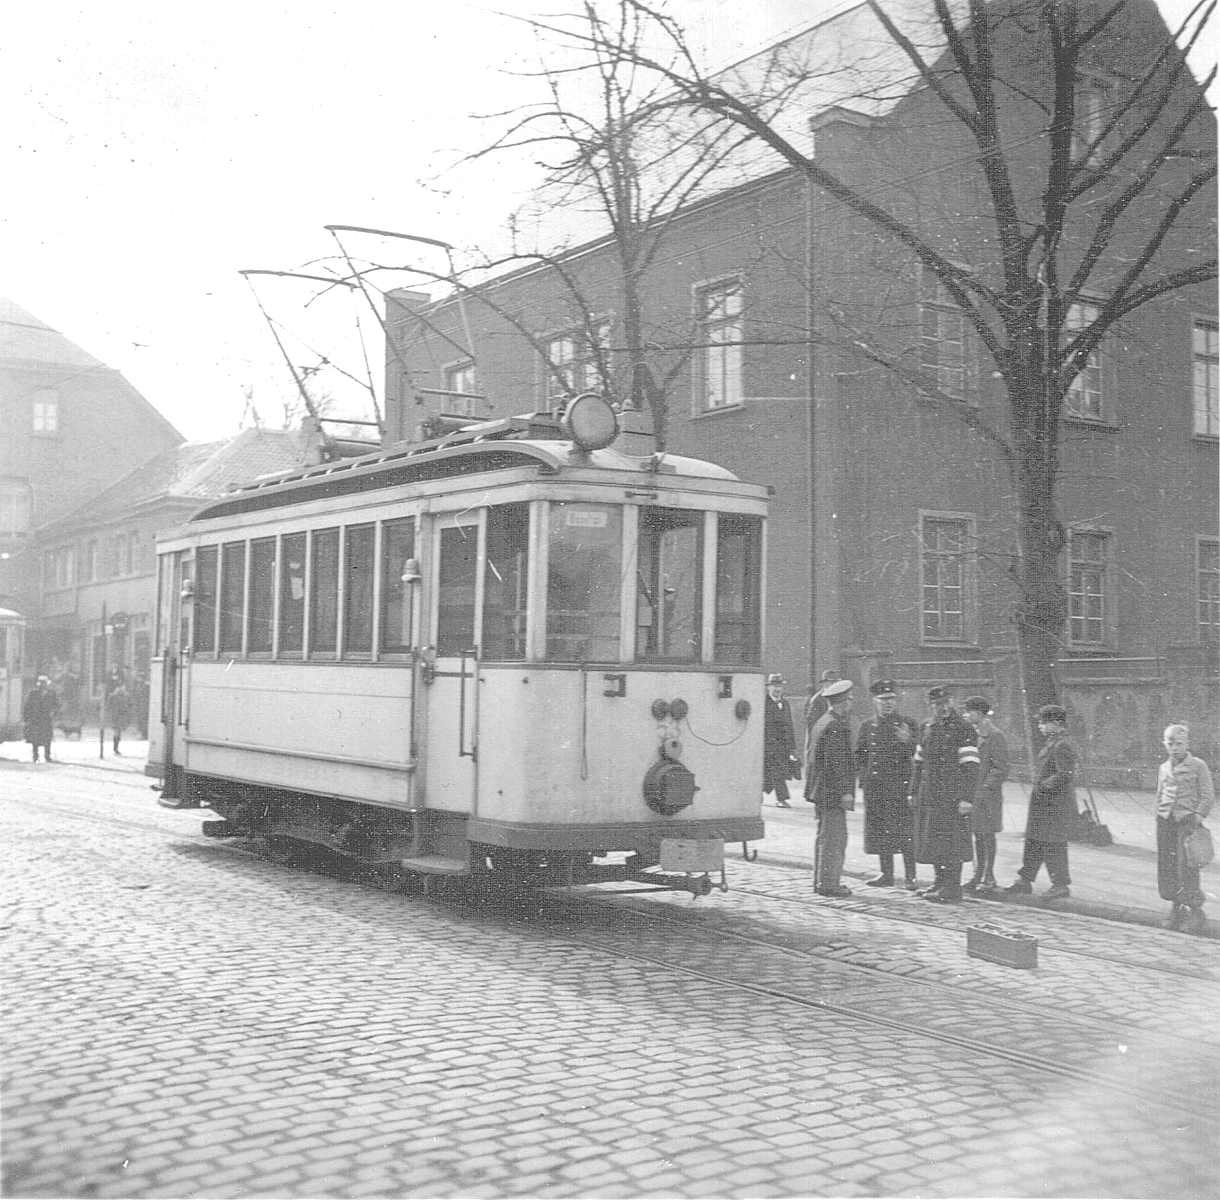 WuppertalerStrassenbahn/7_33_Tram_Wuppertal_Wagen53_mit_Scheinwerfer-Verdunkelung_um_1940